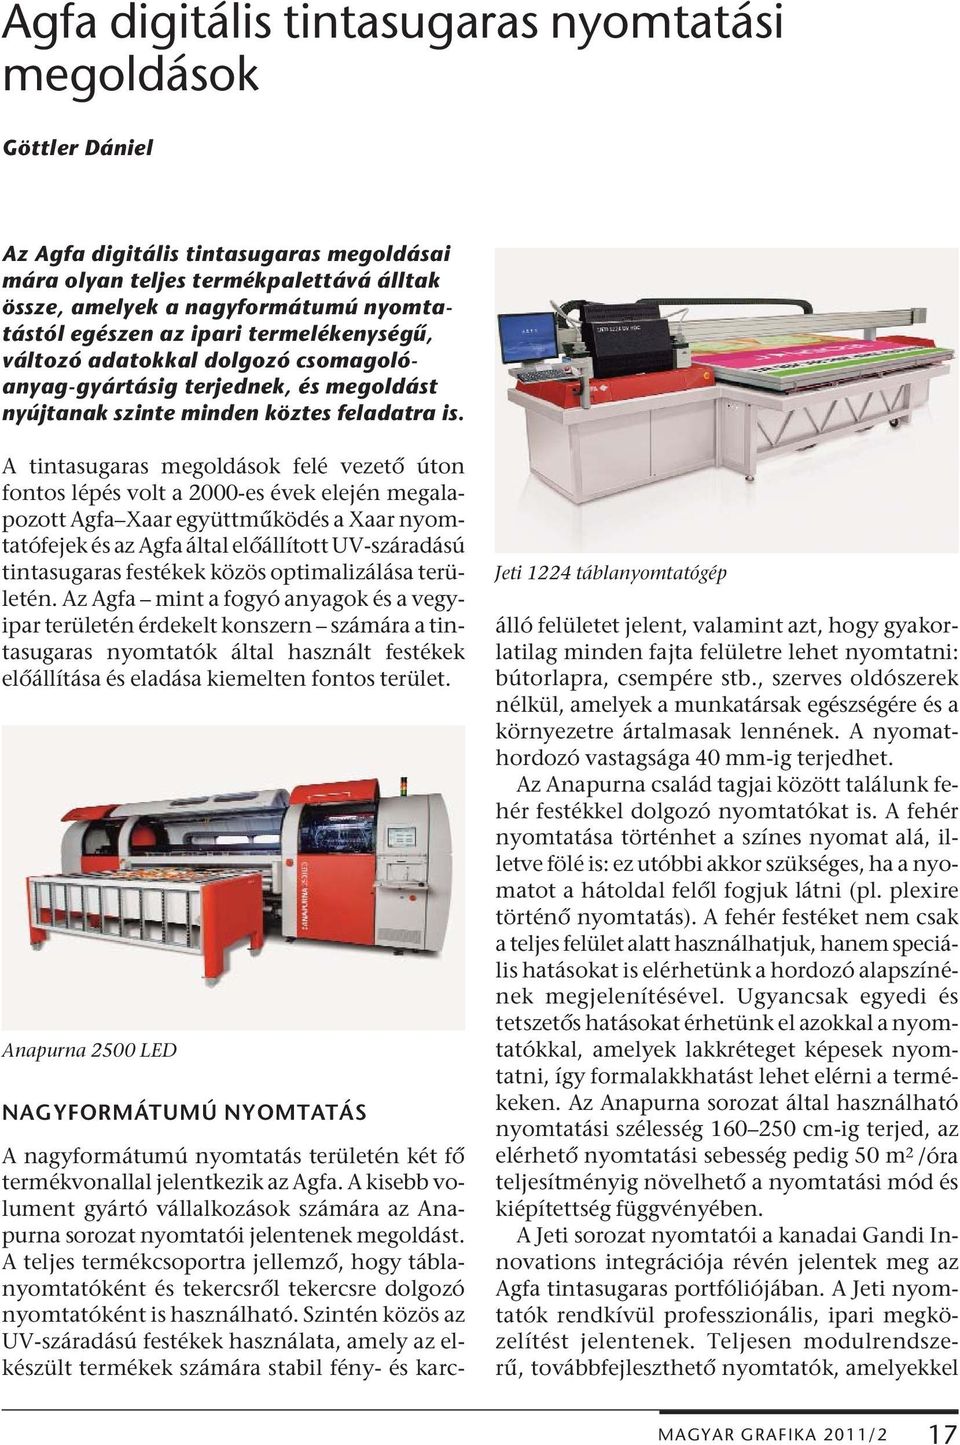 A tintasugaras megoldások felé vezető úton fontos lépés volt a 2000-es évek elején megalapozott Agfa Xaar együttműködés a Xaar nyomtatófejek és az Agfa által előállított UV-száradású tintasugaras